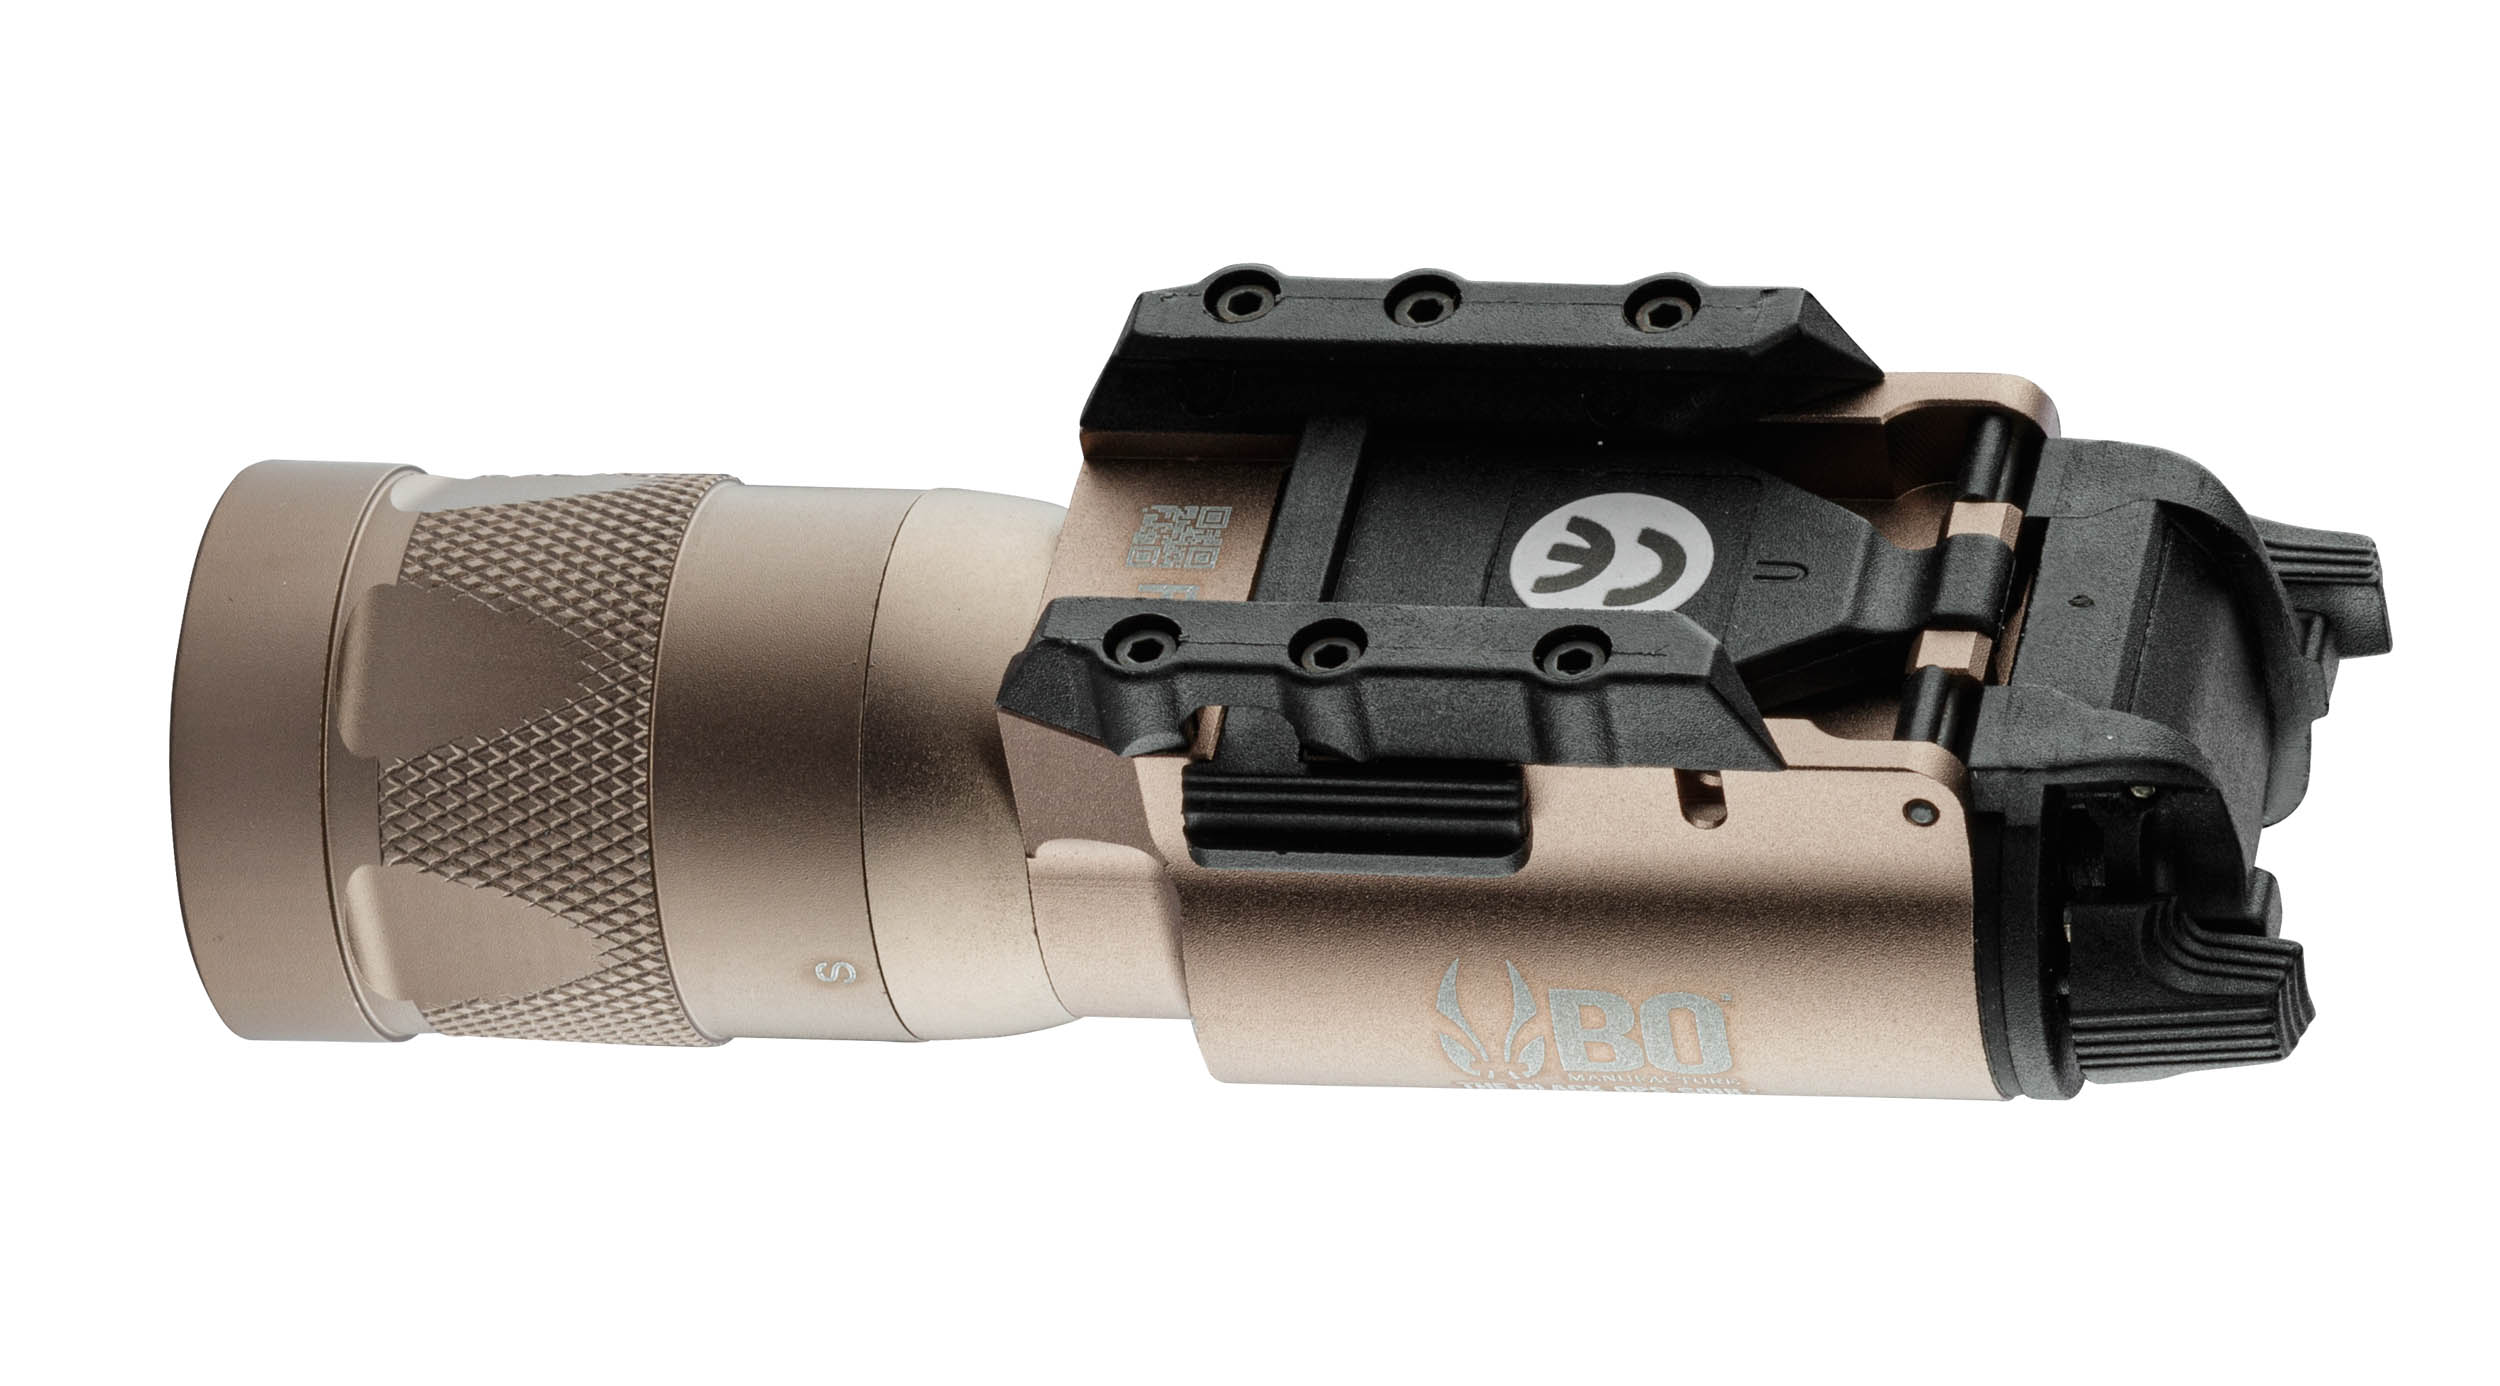 A61164T-05 Lampe LED pistolet BO X300 Stroboscopic 220 lumens - A61164